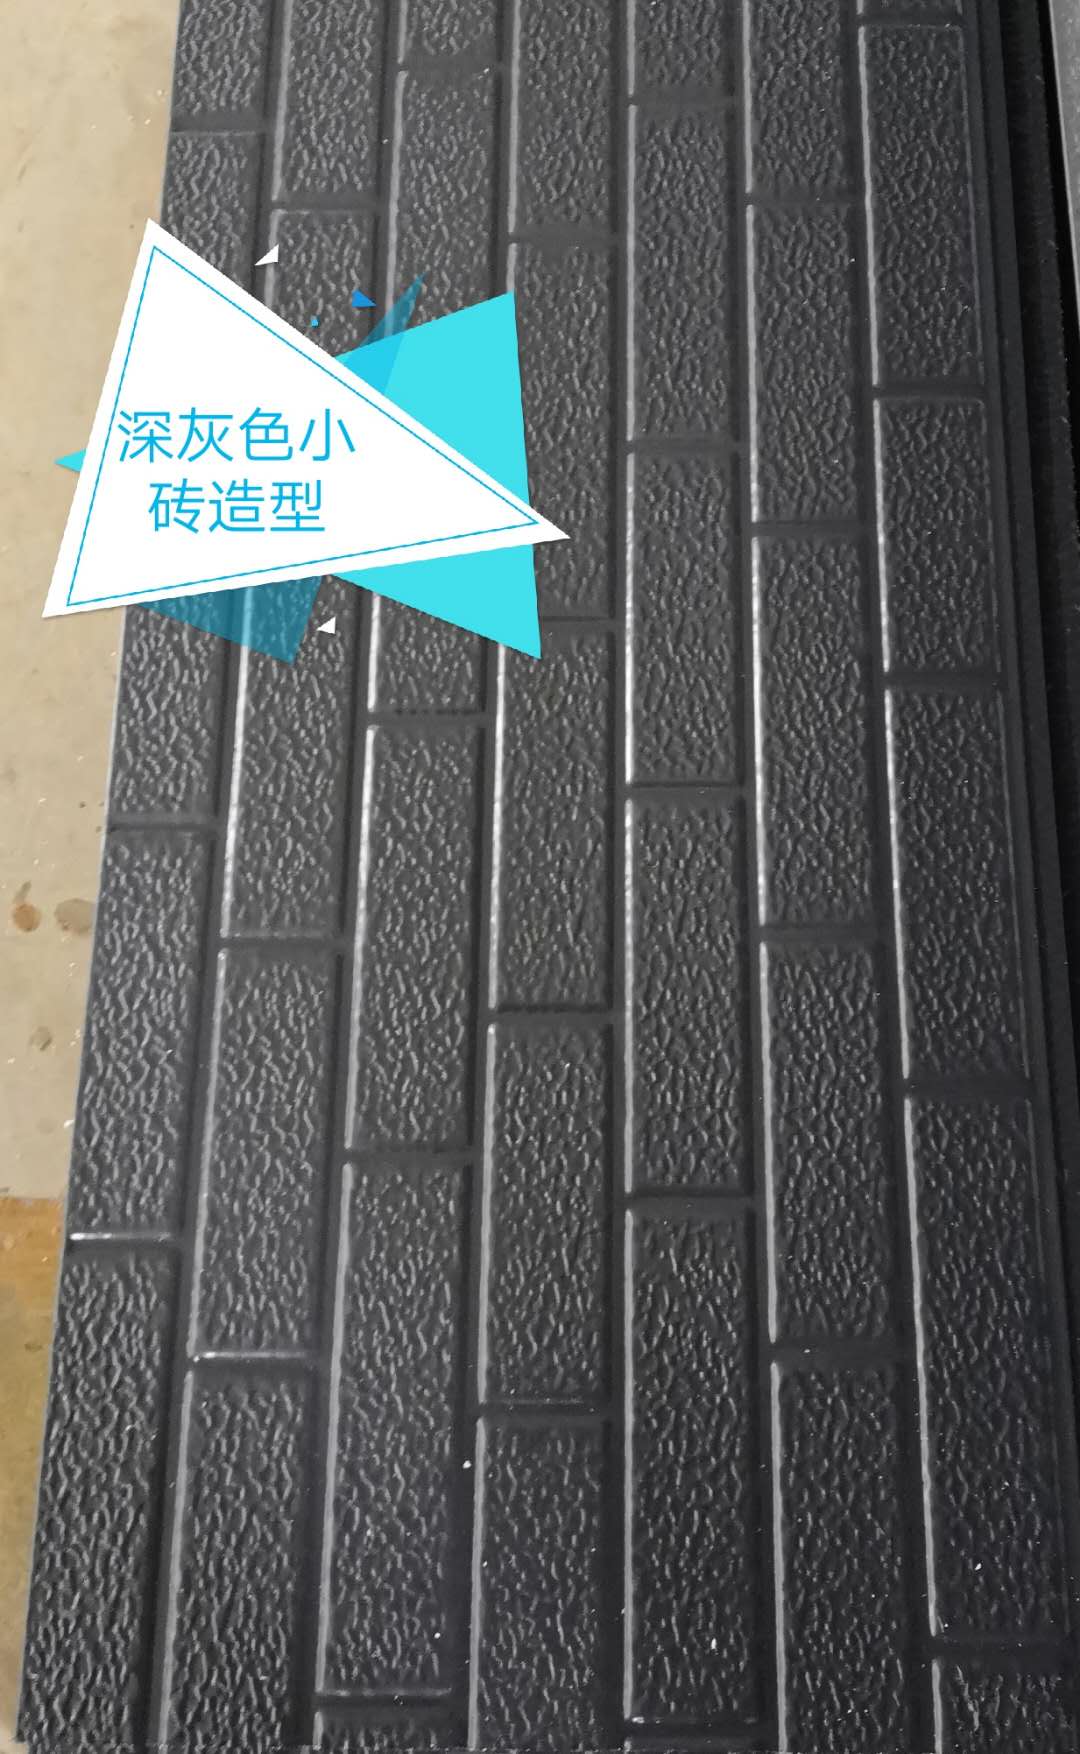 阻燃外墙保温板   ——中亚新型建材欢迎咨询 车间外墙保温板 外墙外保温板 别墅外墙装饰板